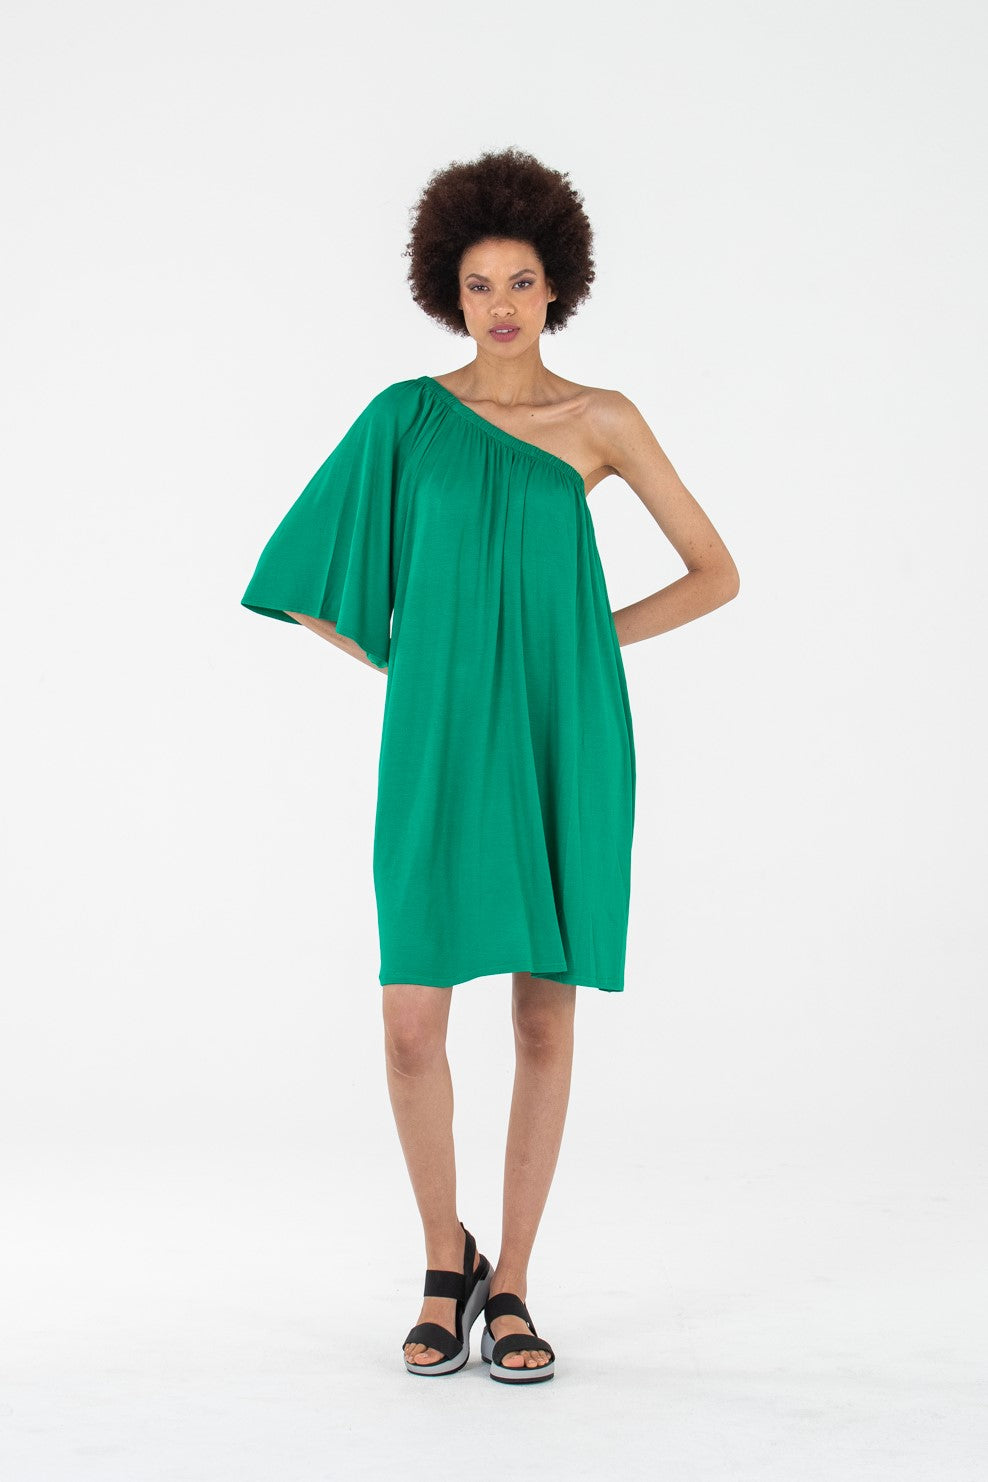 Alexia off the shoulder dress - Emerald Green